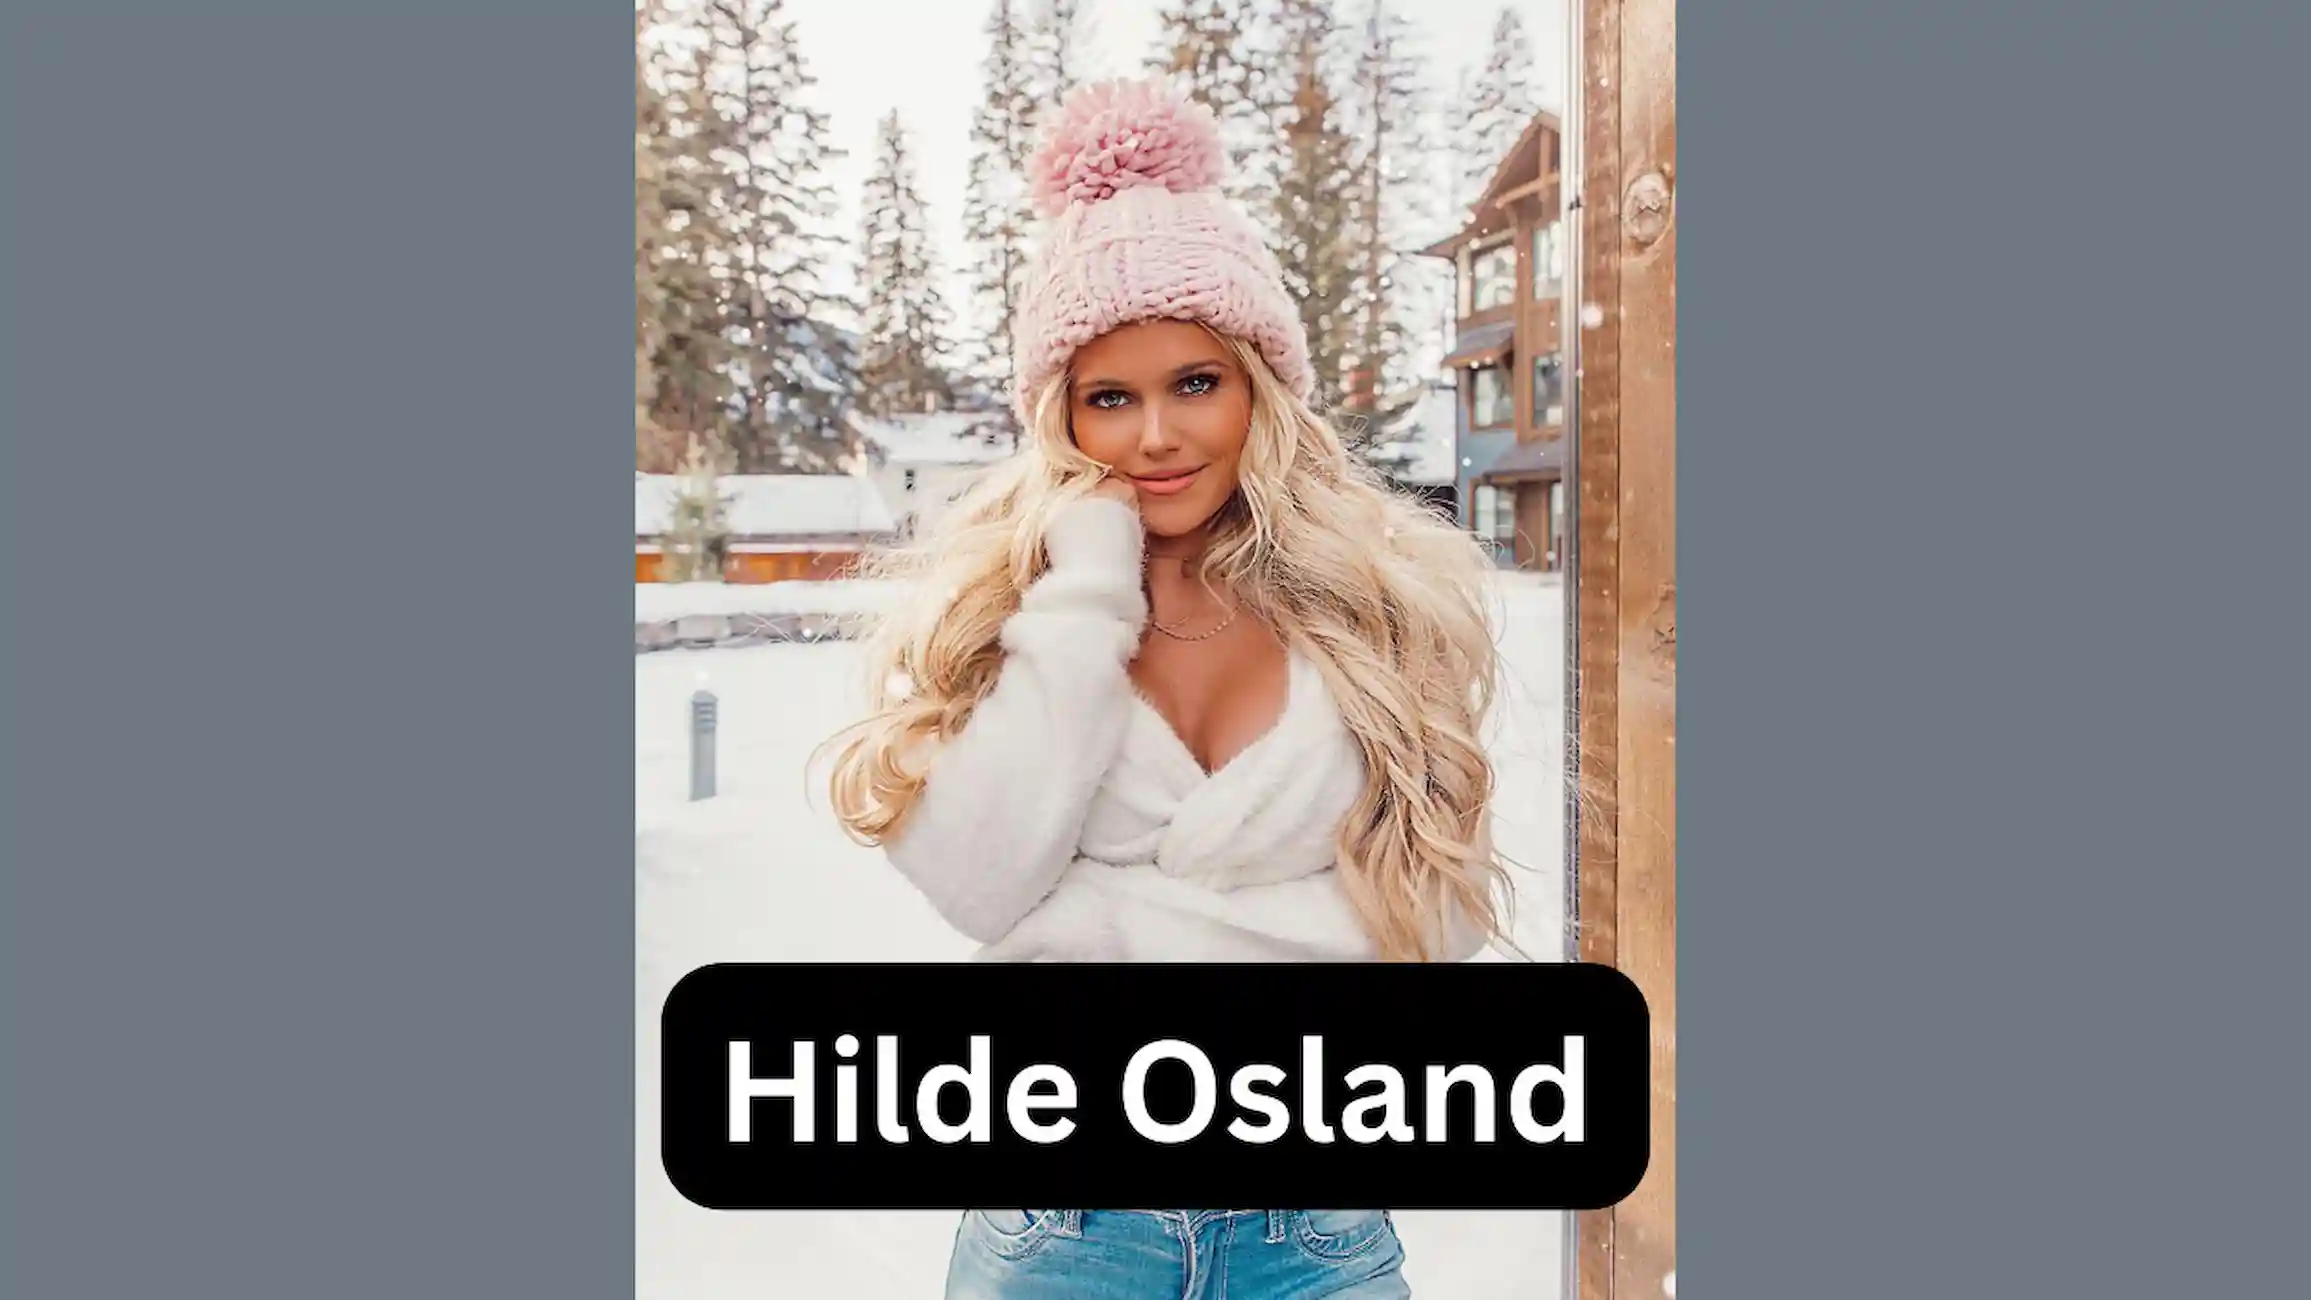 Hilde Osland